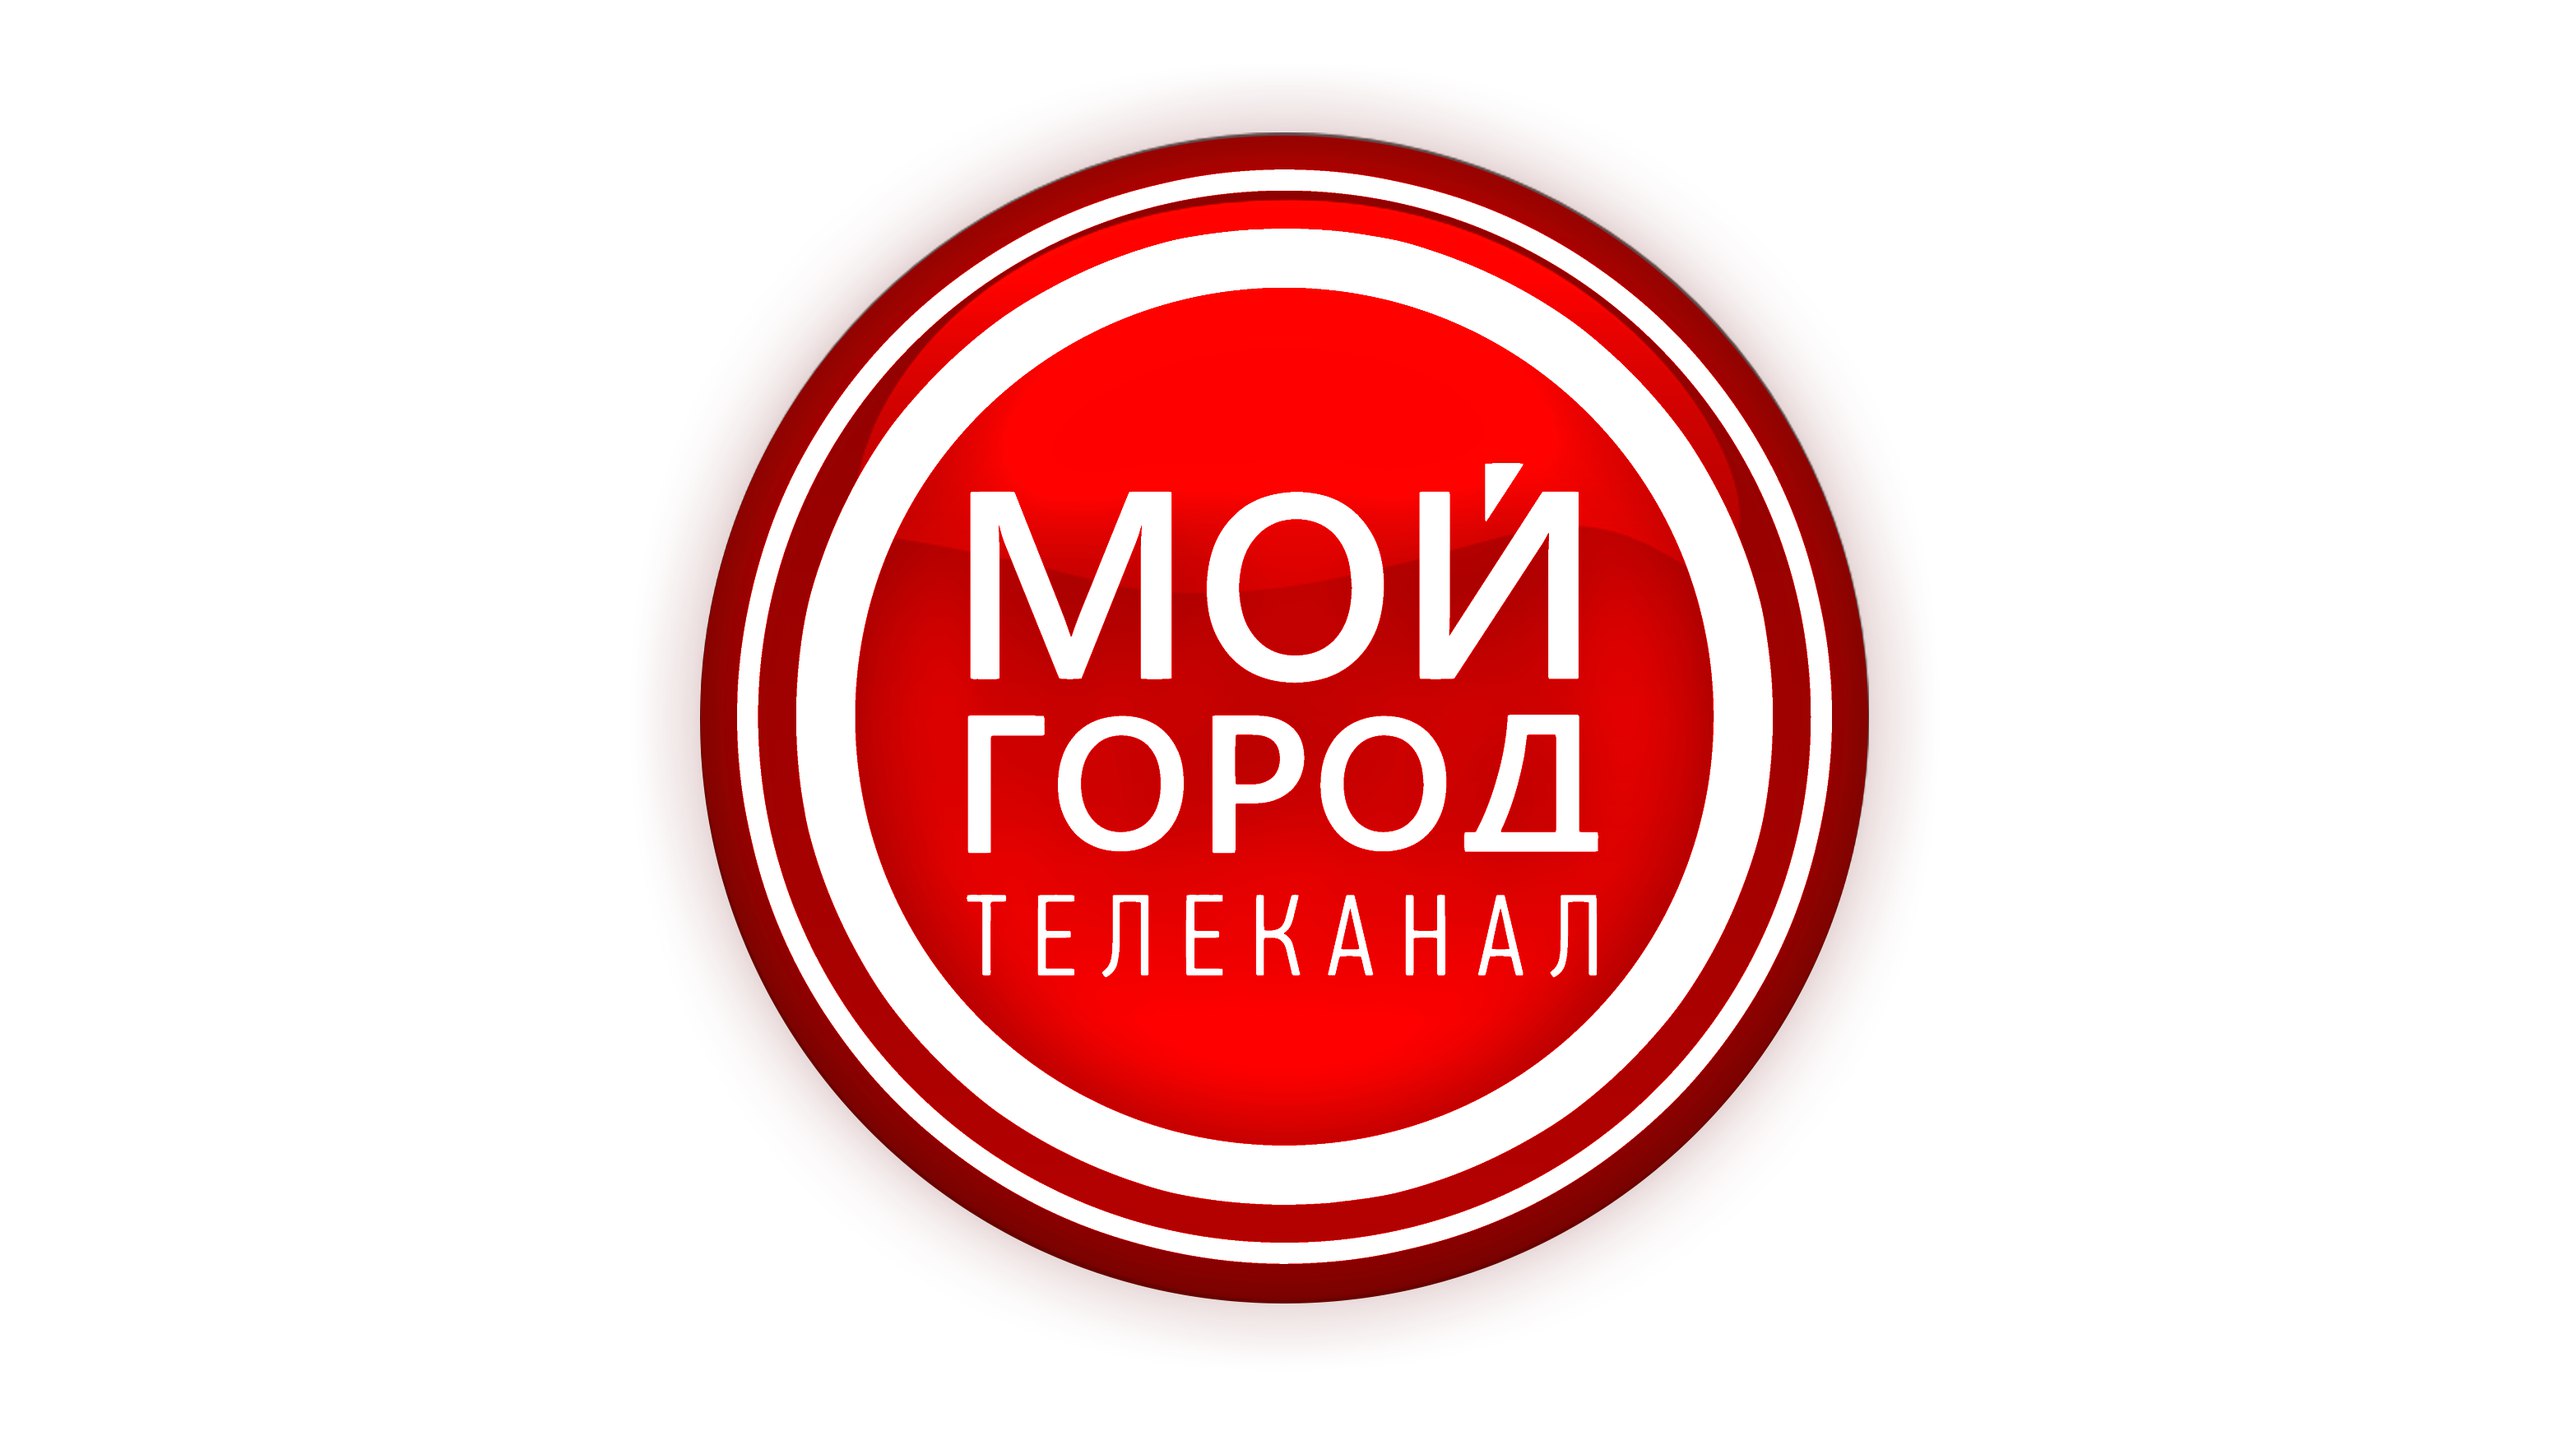 «Мой город»,телеканал, г. Новокузнецк